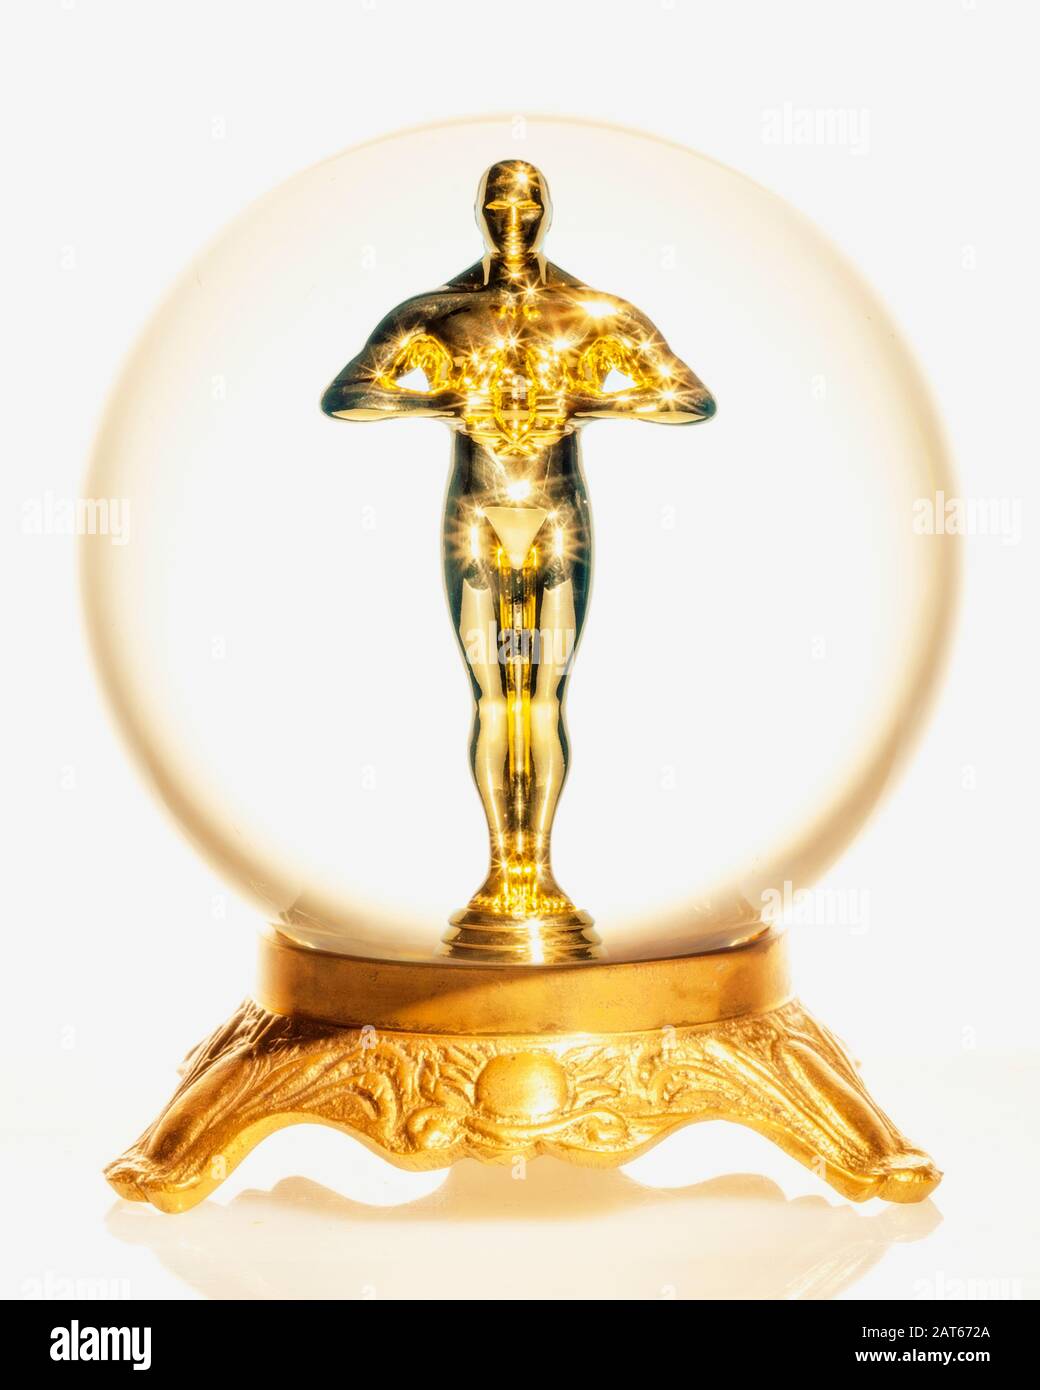 Una statua in stile Oscar d'oro di un uomo che si trova all'interno di una sfera di cristallo Foto Stock